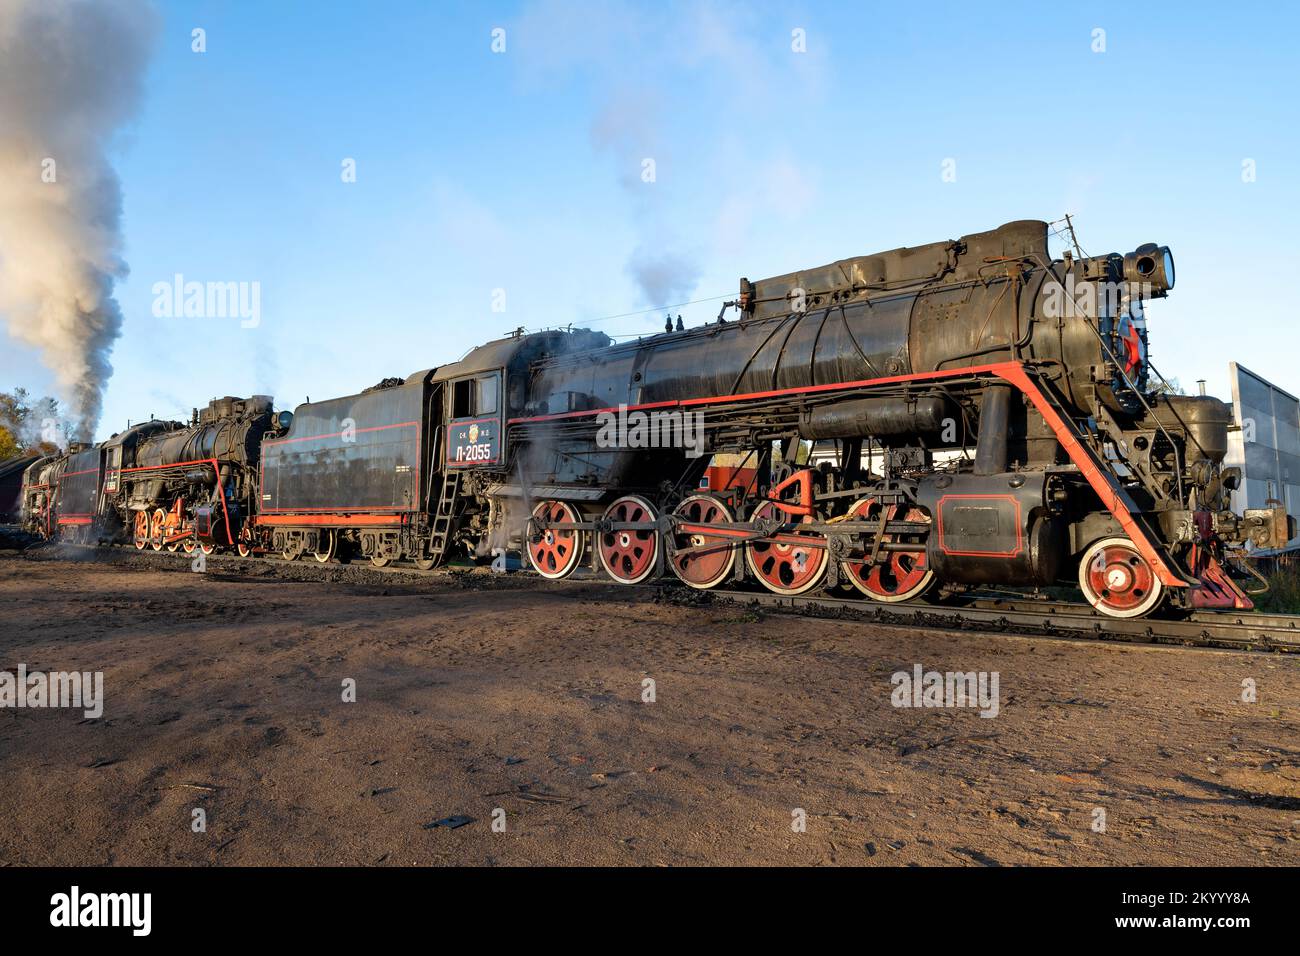 SORTAVALA, RUSSLAND - 09. OKTOBER 2022: Alte sowjetische Dampflokomotiven der L-Serie auf der Ersatzstrecke des Bahnhofs Sortavala an einem sonnigen Oktobermorgen Stockfoto